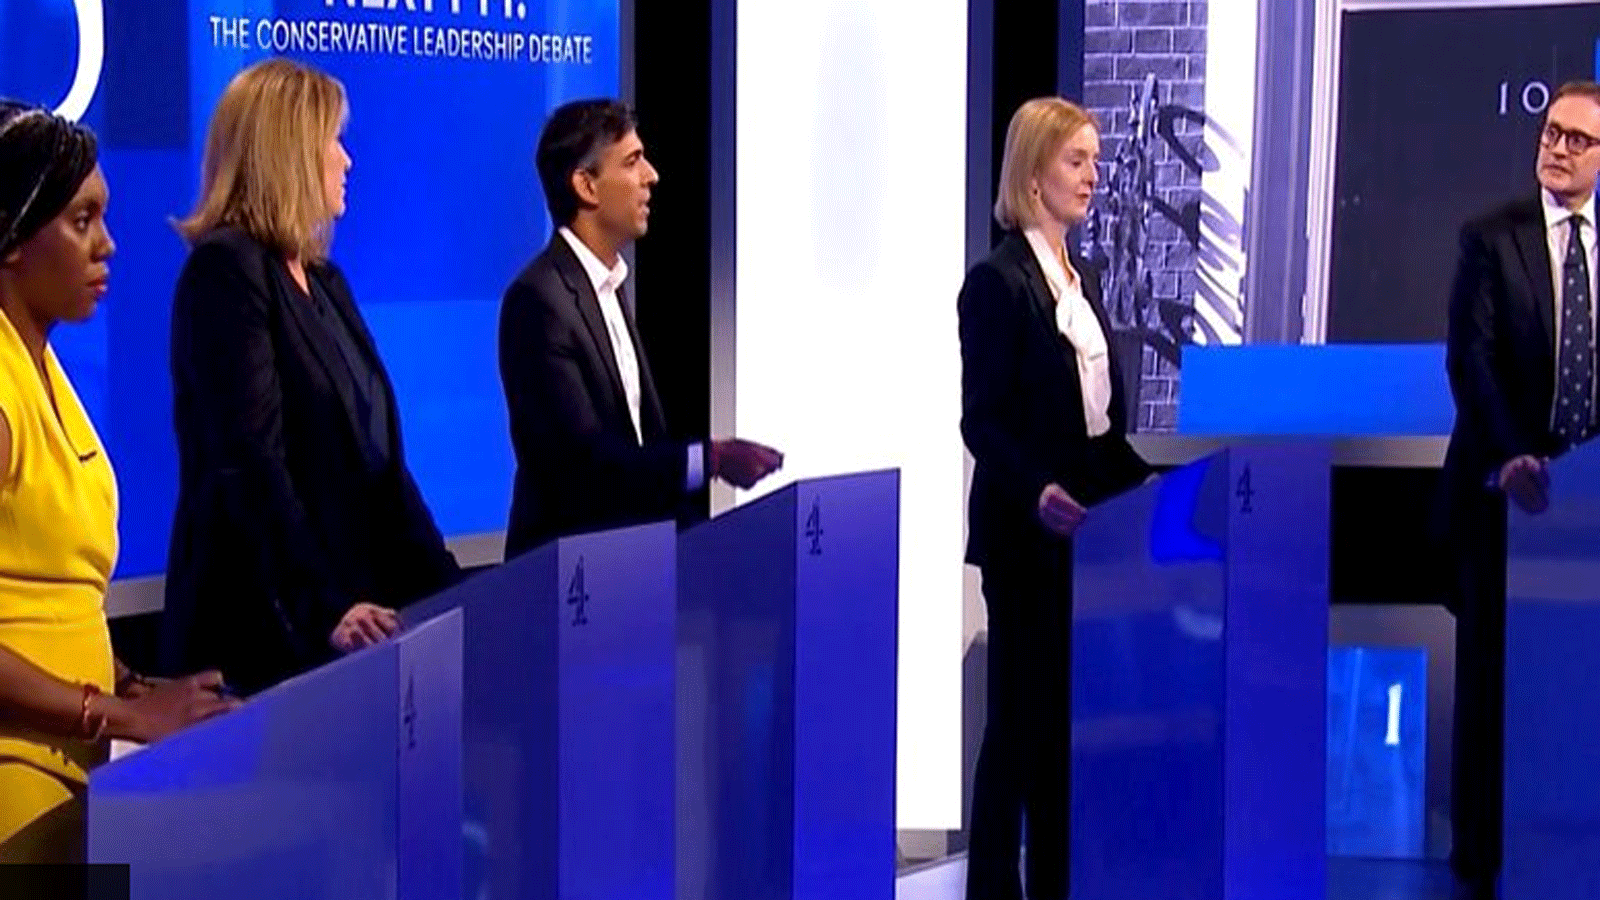 مرشحو قيادة حزب المحافظين الخمسة خلال مناظرة القناة الرابعة (صورة من وسائل الاتصال الاجتماعي البريطانية)